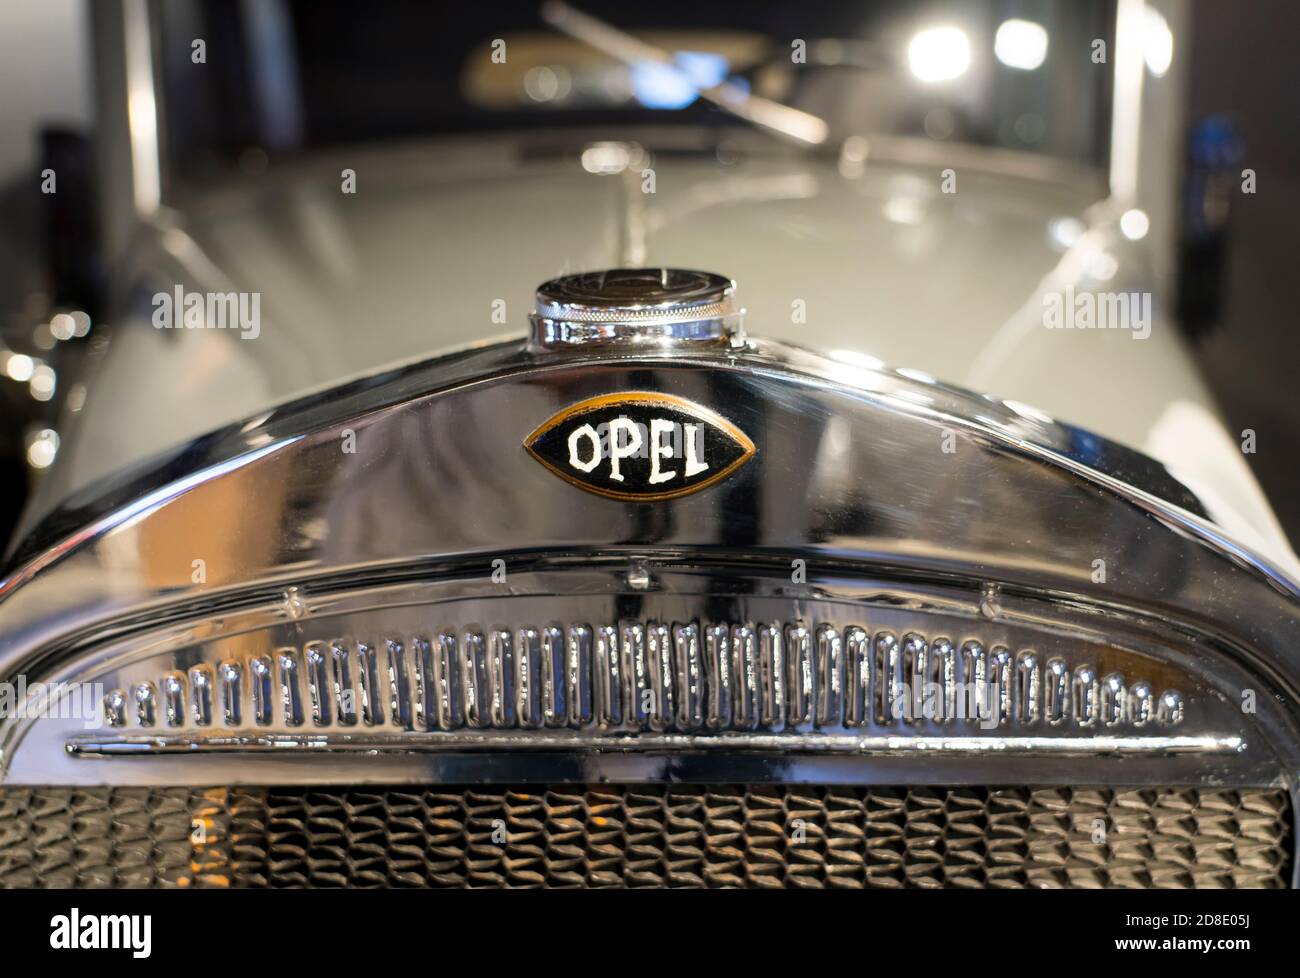 Opel Oldtimer, deutscher Automobilhersteller Opel, 1930er Jahre, PS.SPEICHER Museum, Einbeck, Niedersachsen, Deutschland, Europa Stockfoto